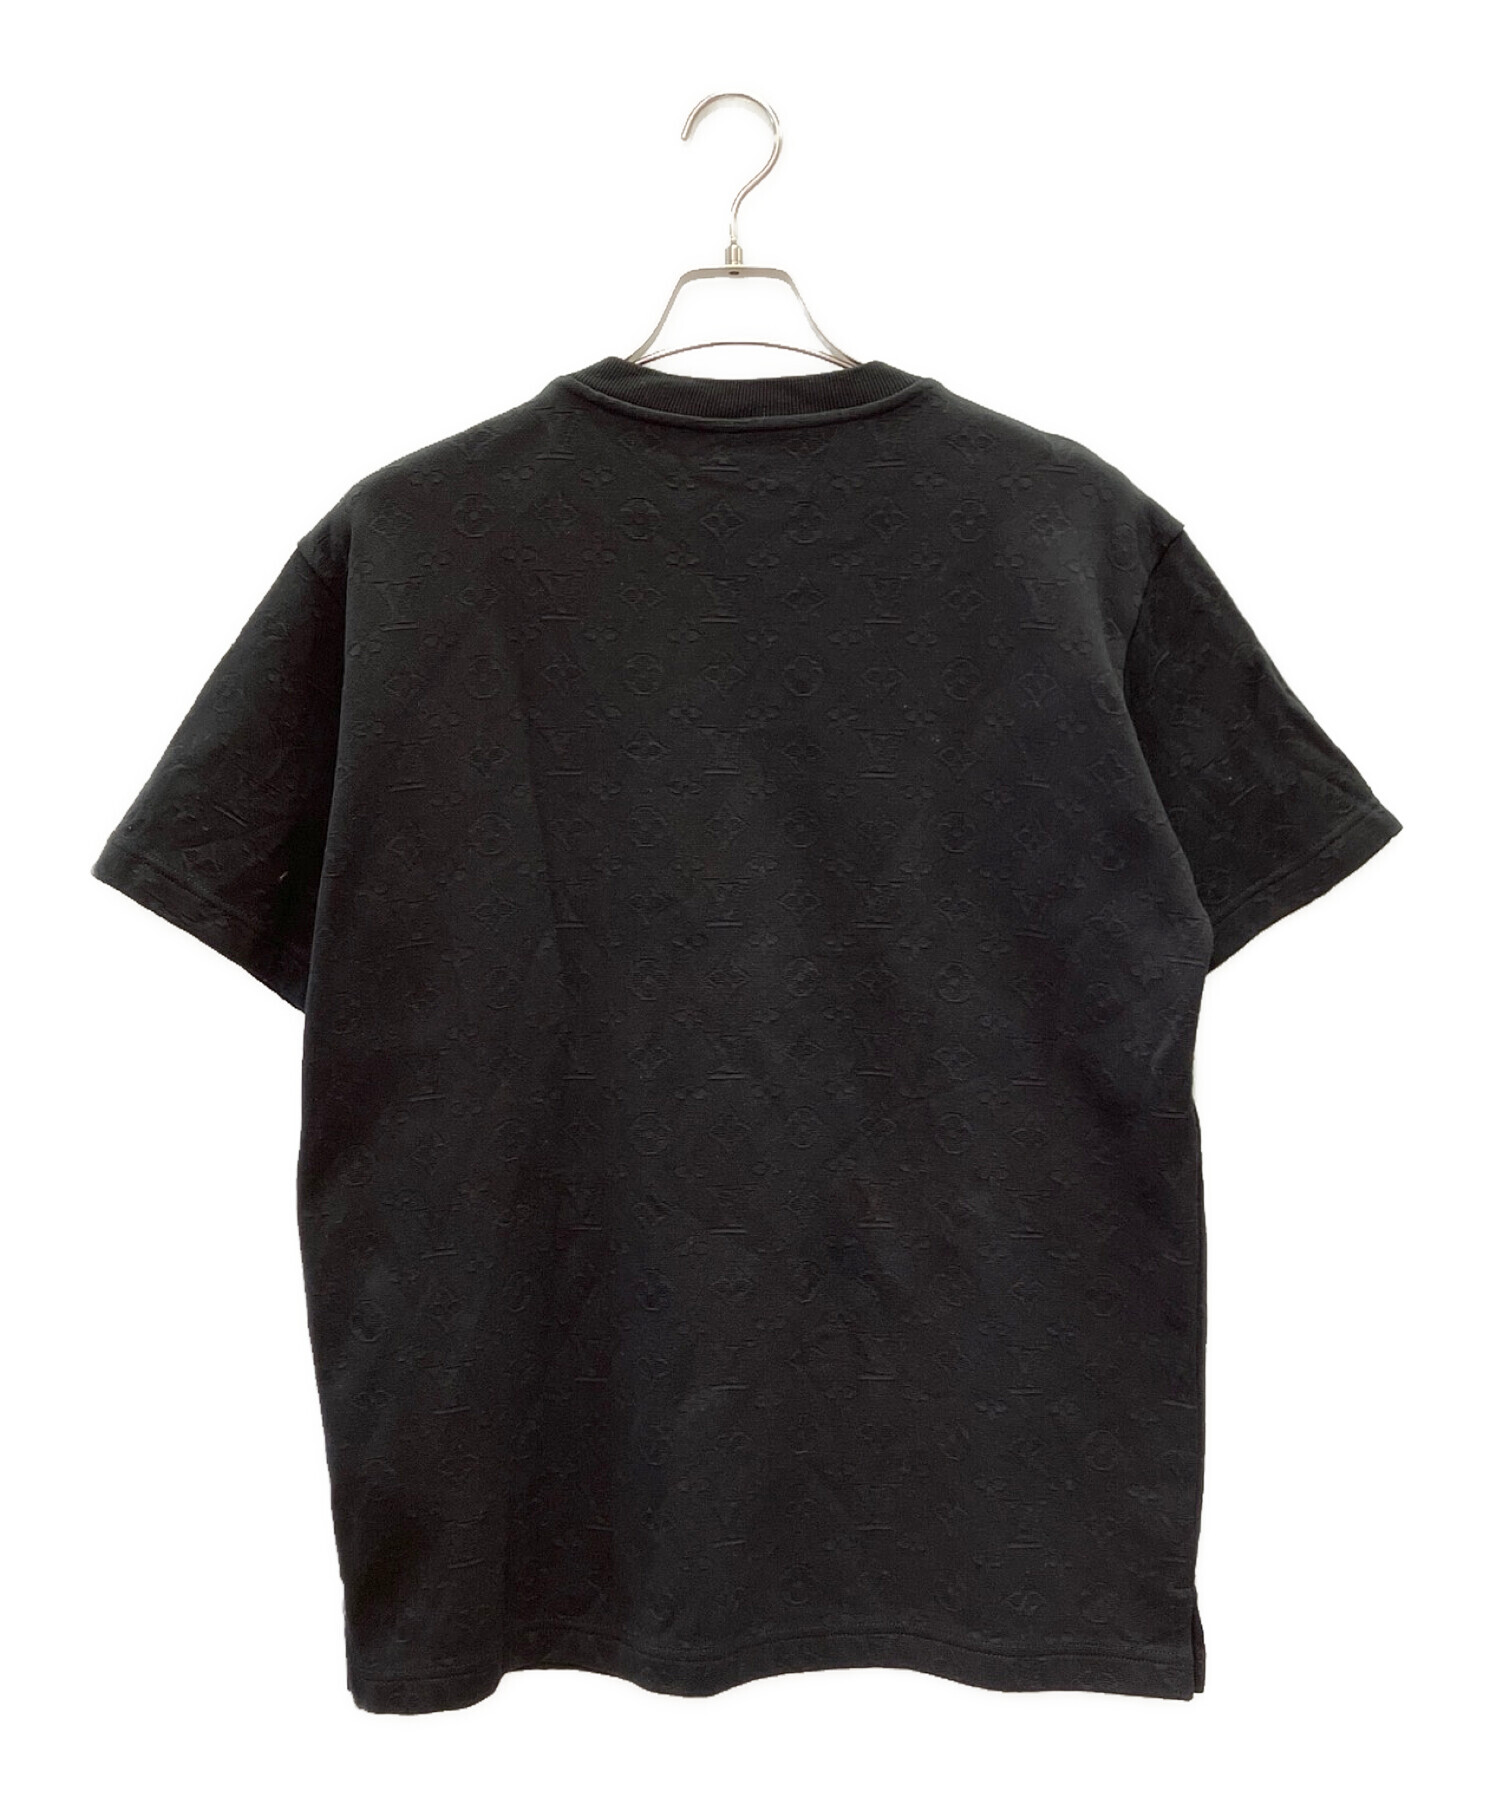 LOUIS VUITTON (ルイ ヴィトン) 3DポケットモノグラムTシャツ ブラック サイズ:M